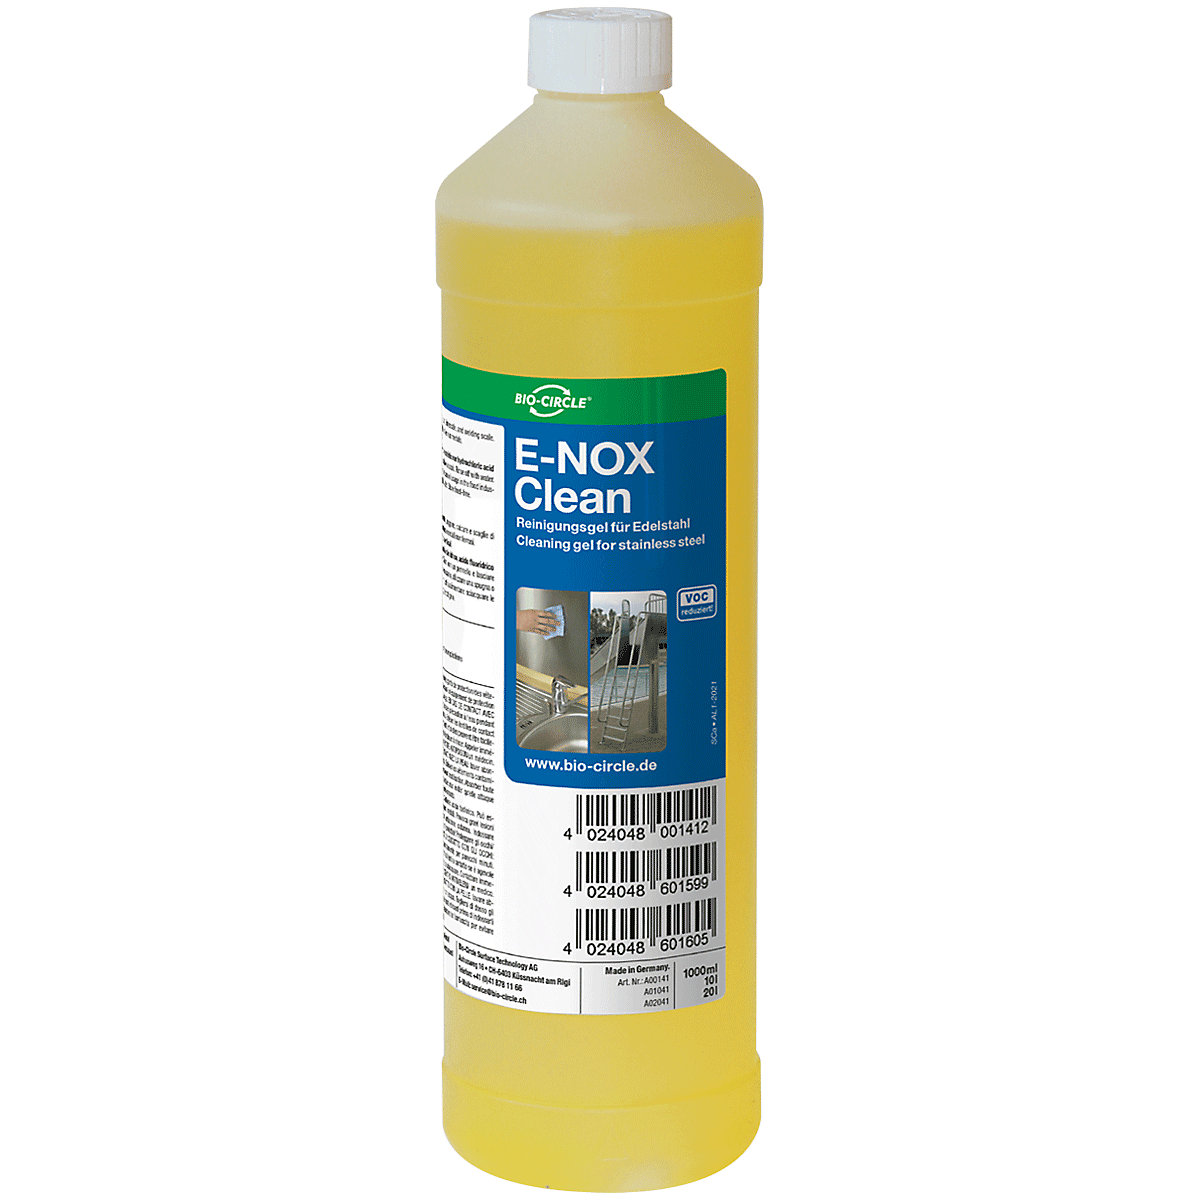 Agent de curățare împotriva calcarului și ruginii E-NOX Clean – Bio-Circle